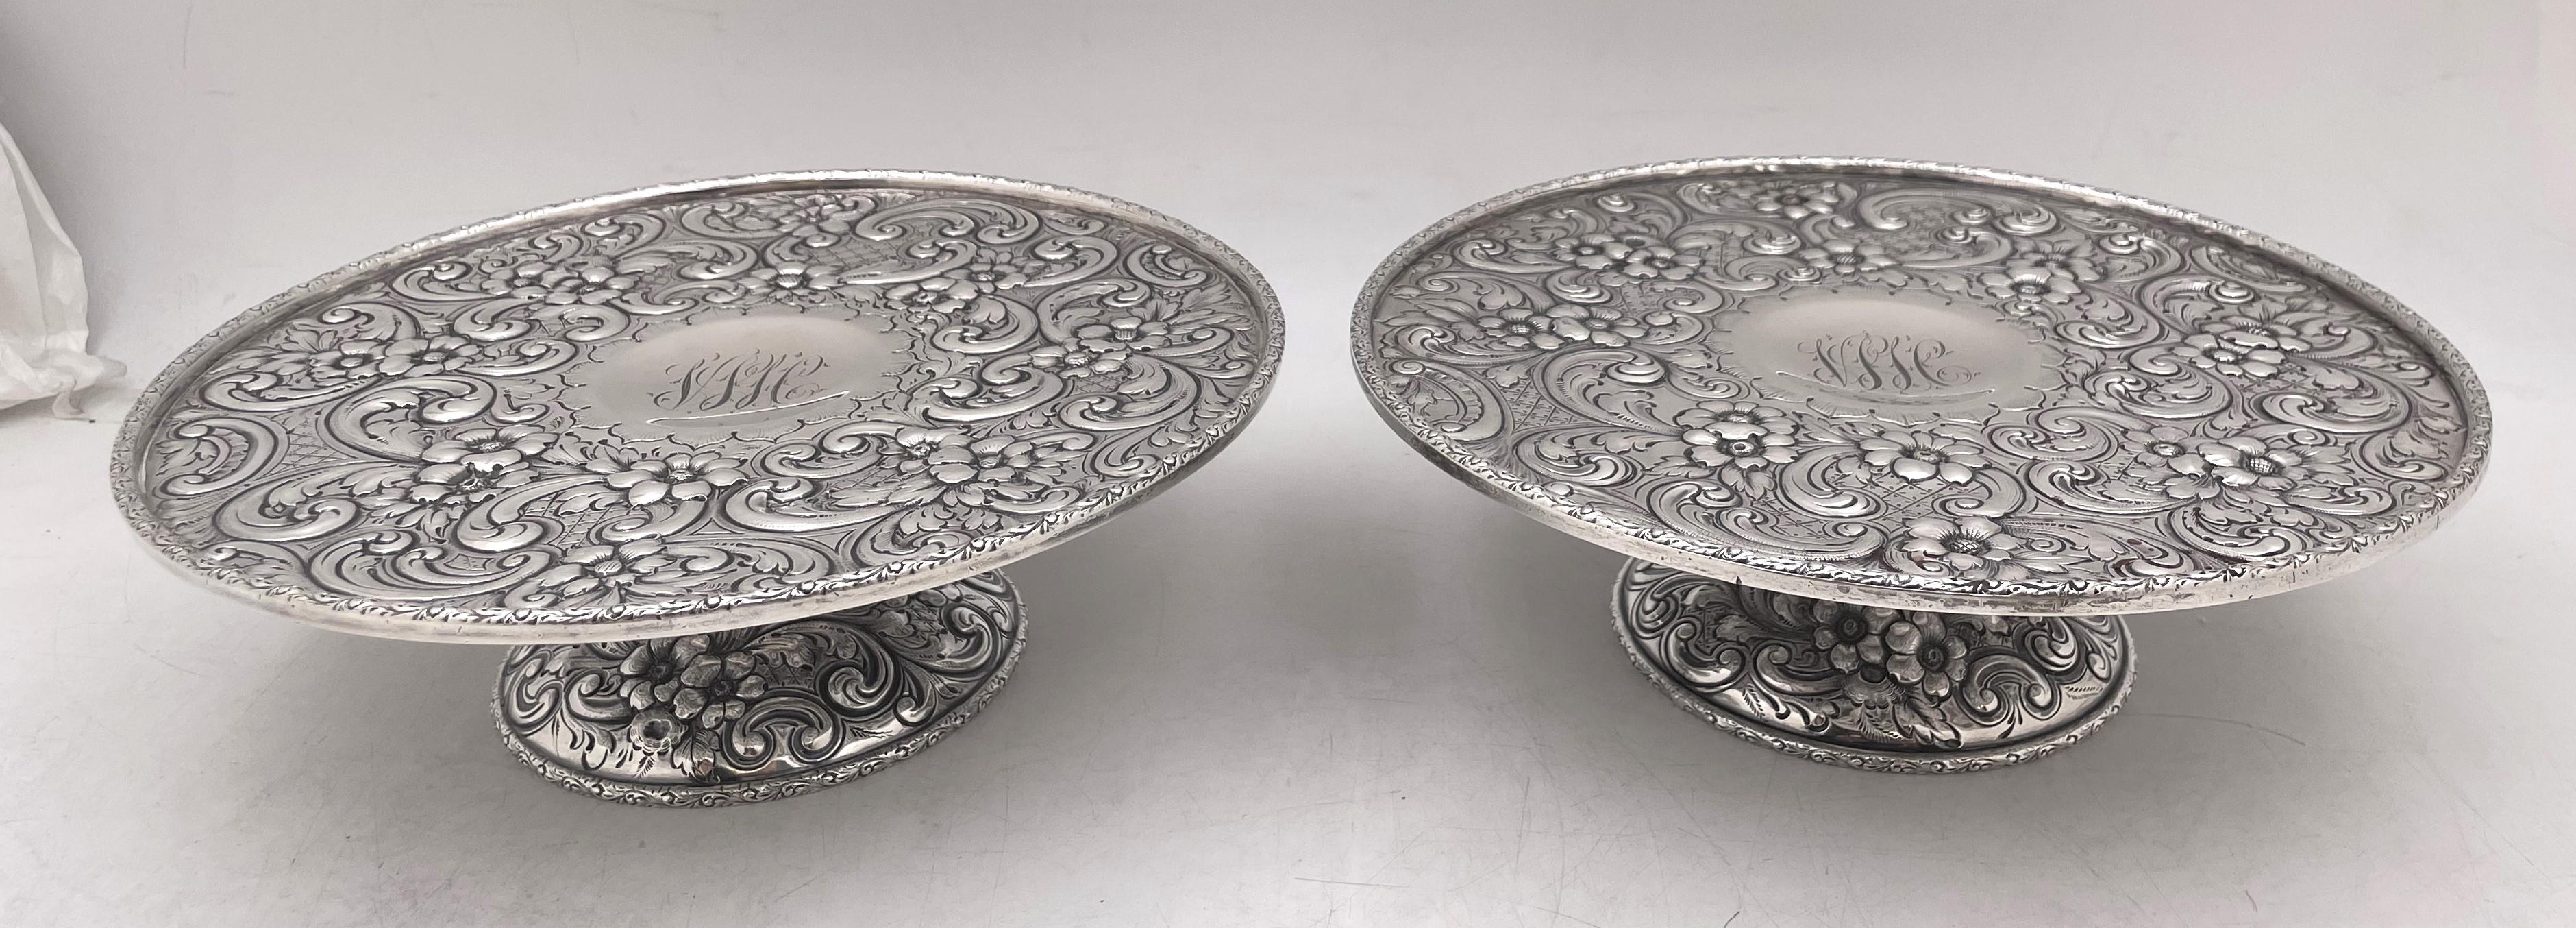 Paire de compotiers, tazze ou bols à pied en argent sterling, datant de 1908, de style Art nouveau, présentant des motifs floraux et des palmettes curvilignes. Ils mesurent 8 3/4'' de diamètre par 2 7/8'' de hauteur, pèsent 39,8 onces troy, et